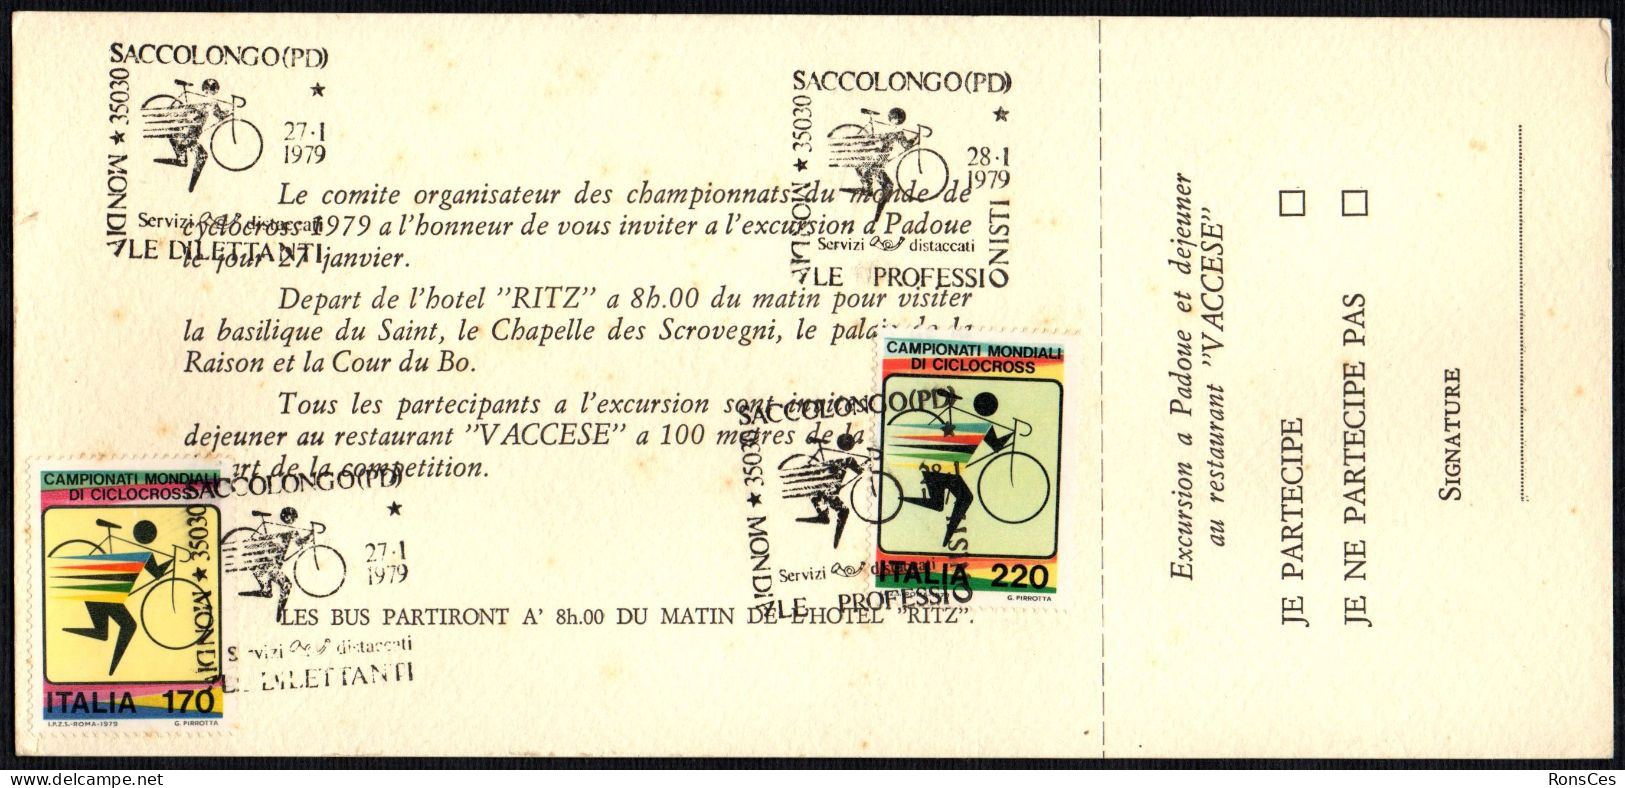 CYCLING - ITALIA SACCOLONGO (PD) 1979 - CAMPIONATO MONDIALE CICLOCROSS - 2 ANNULLI PROFESSIONISTI / DILETTANTI - A - Wielrennen